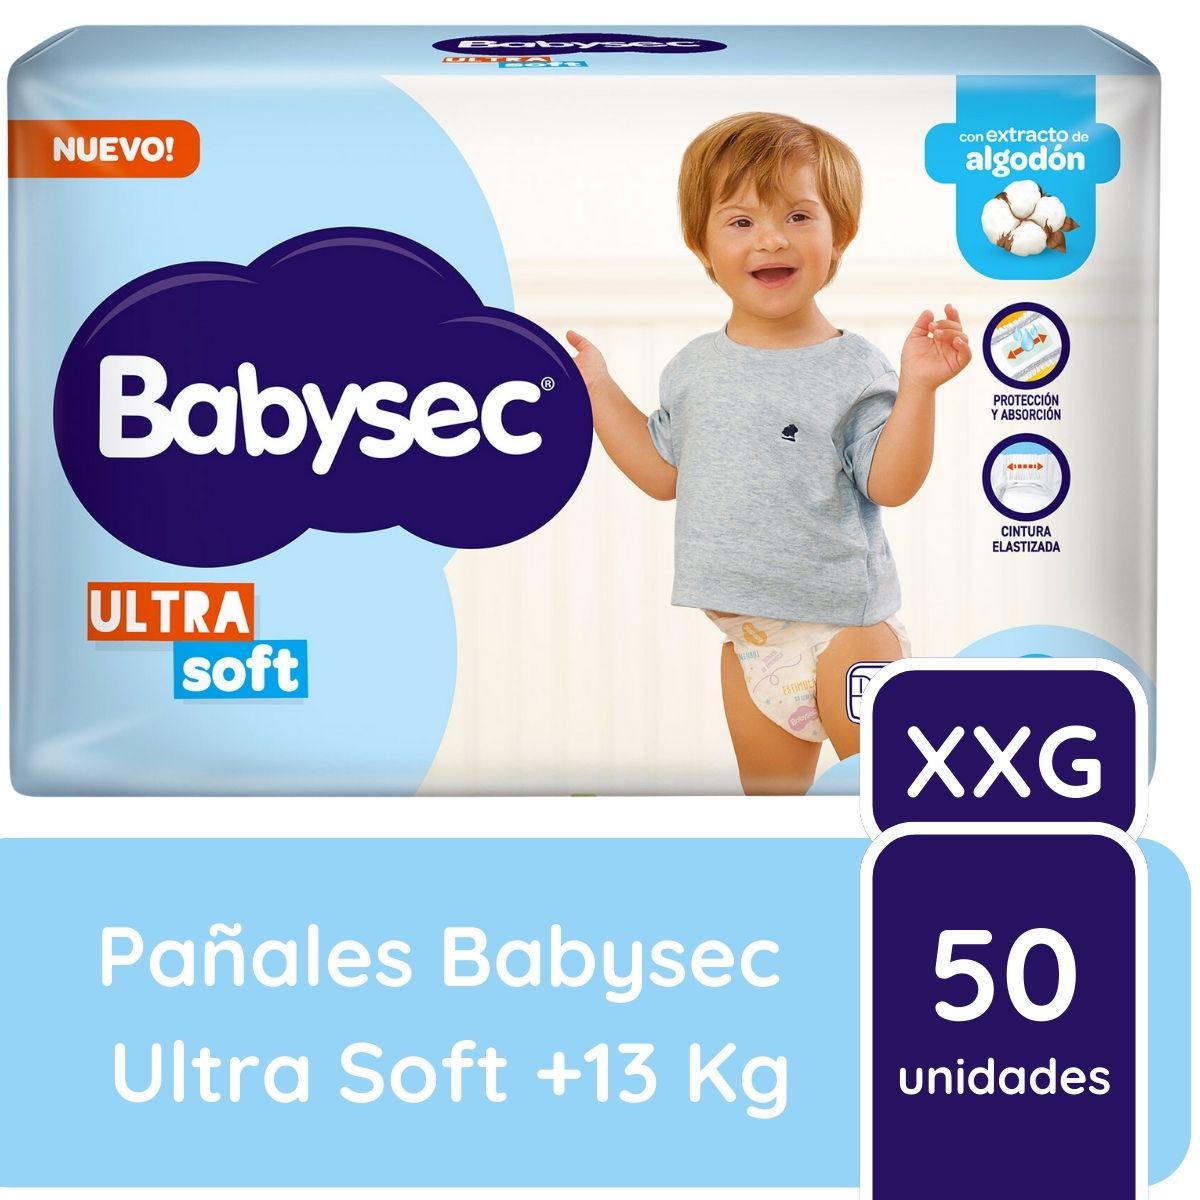 Imagen 1 de 2 de Pañales Babysec Ultra Soft Talle XXG x50 unidades +13 kilos